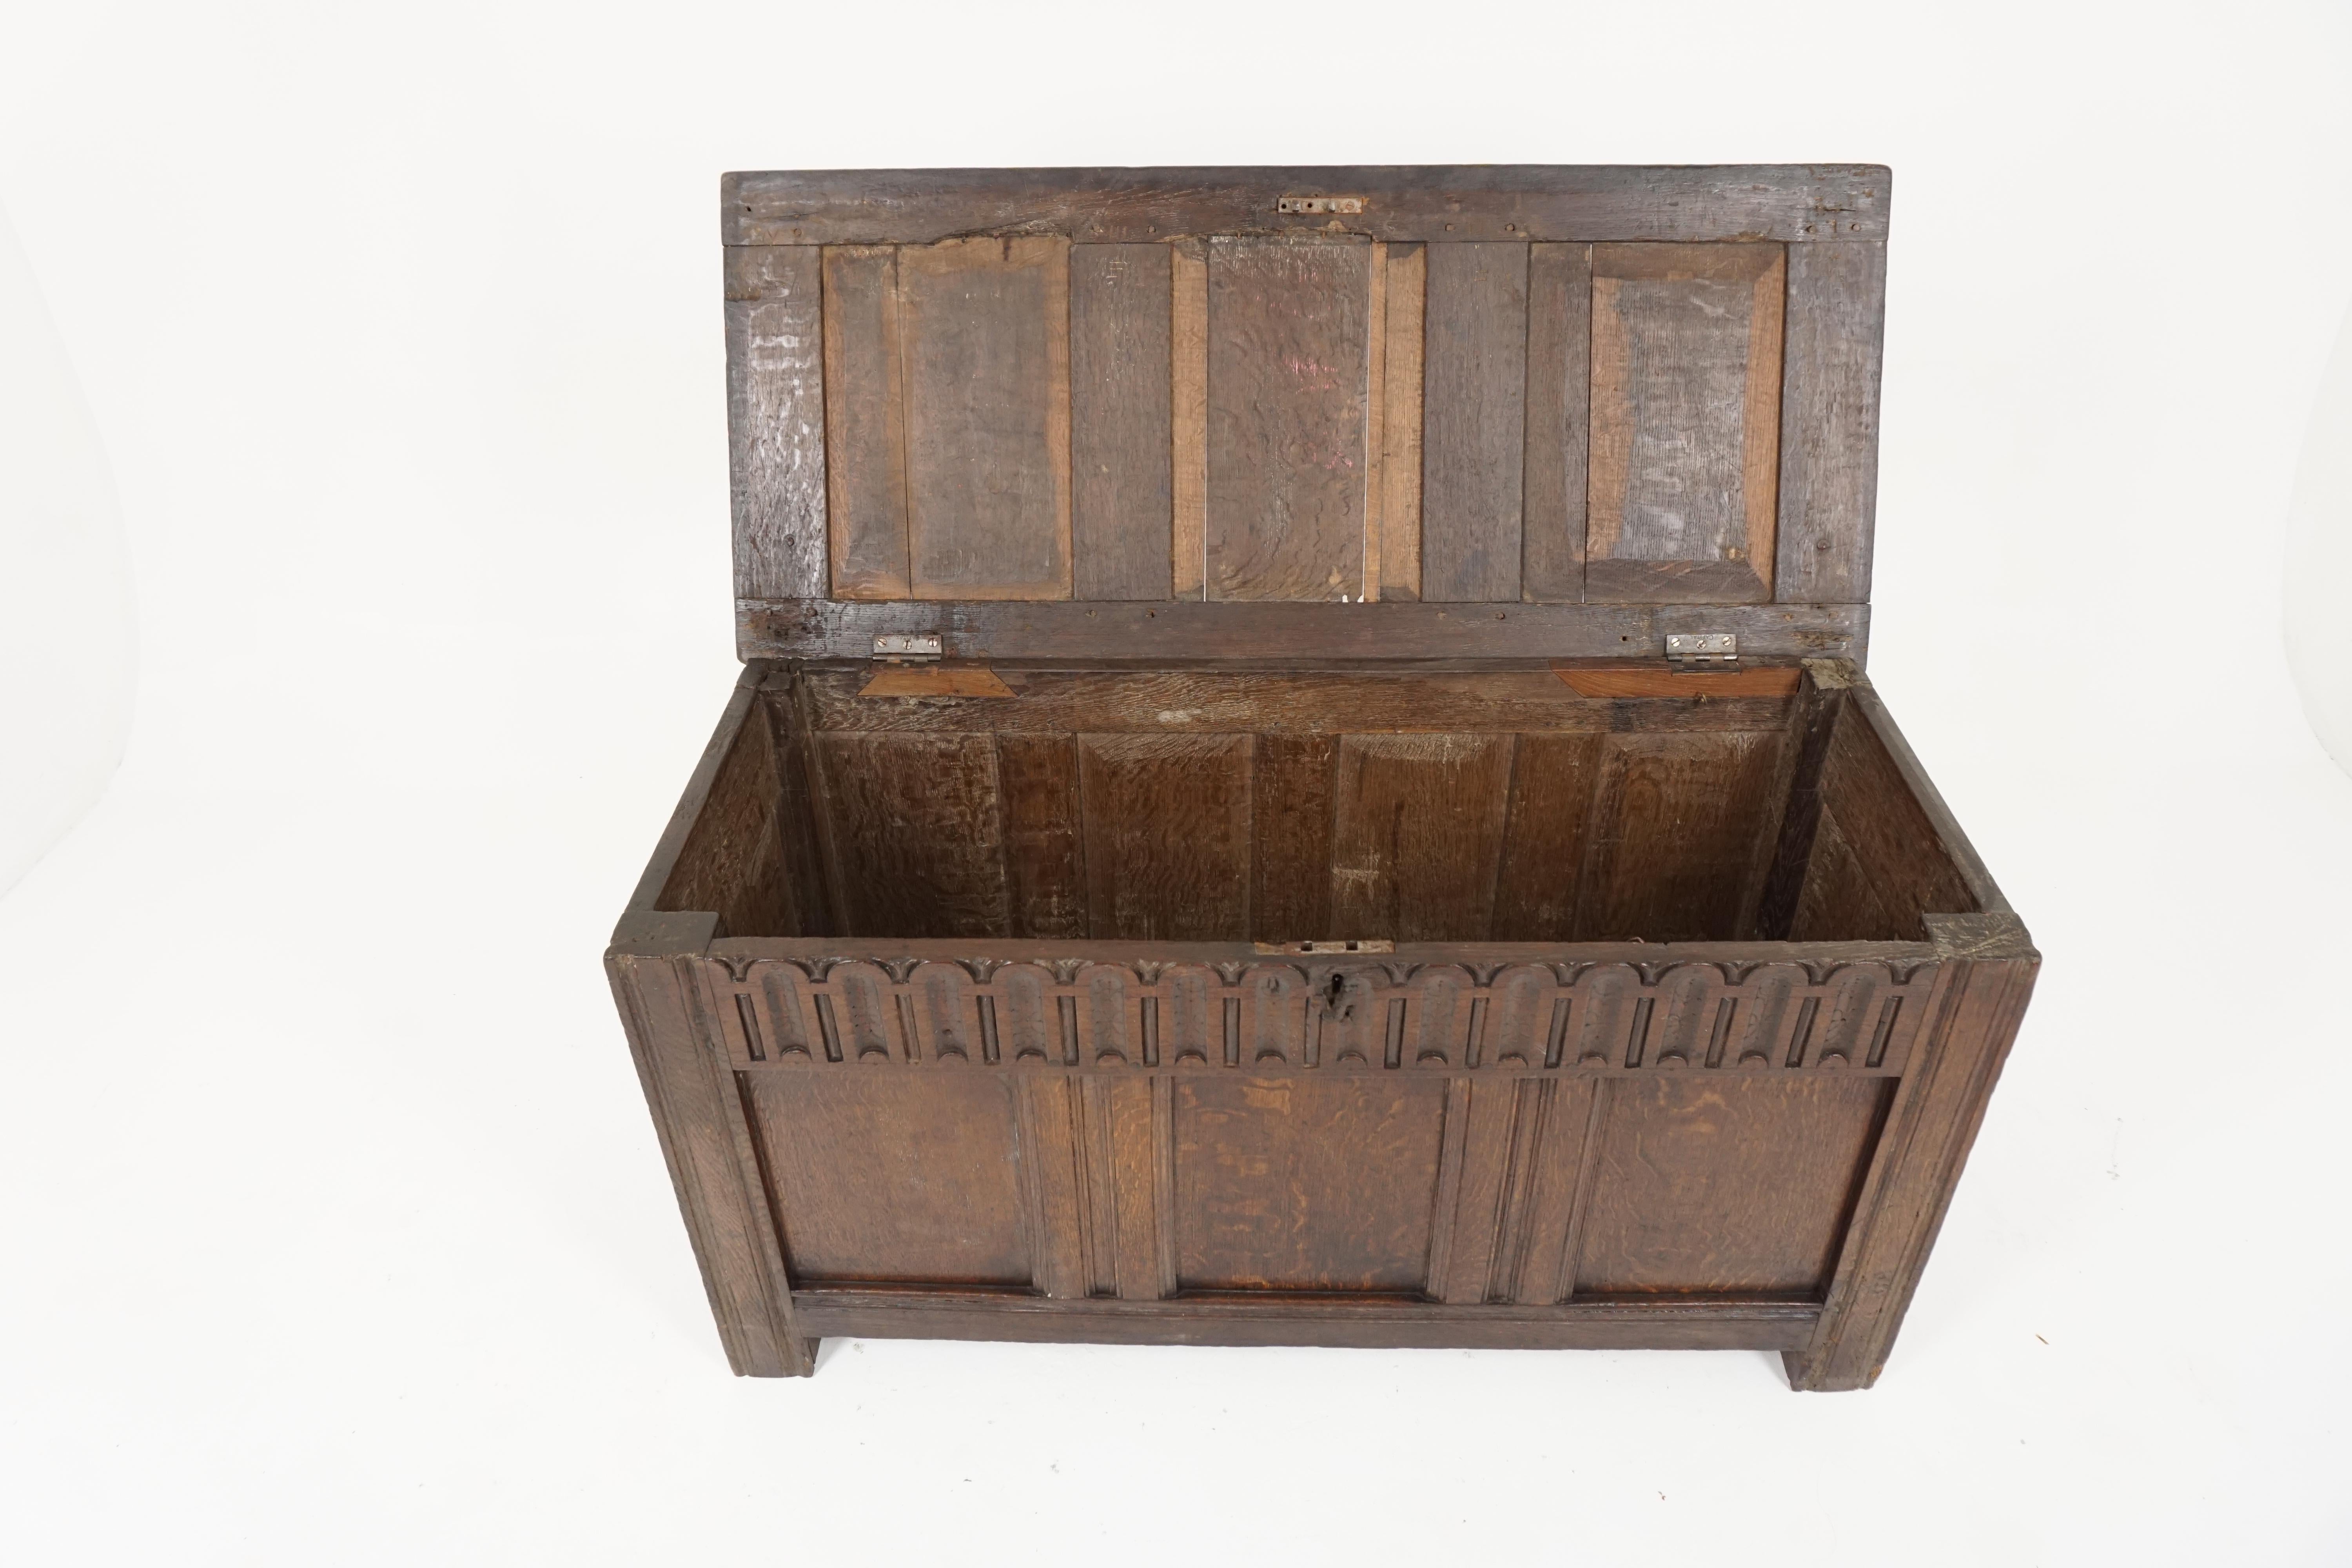 Hand-Crafted Antique Oak Coffer, Georgian Kist Trunk, Antique Furniture, Scotland 1780, B1842